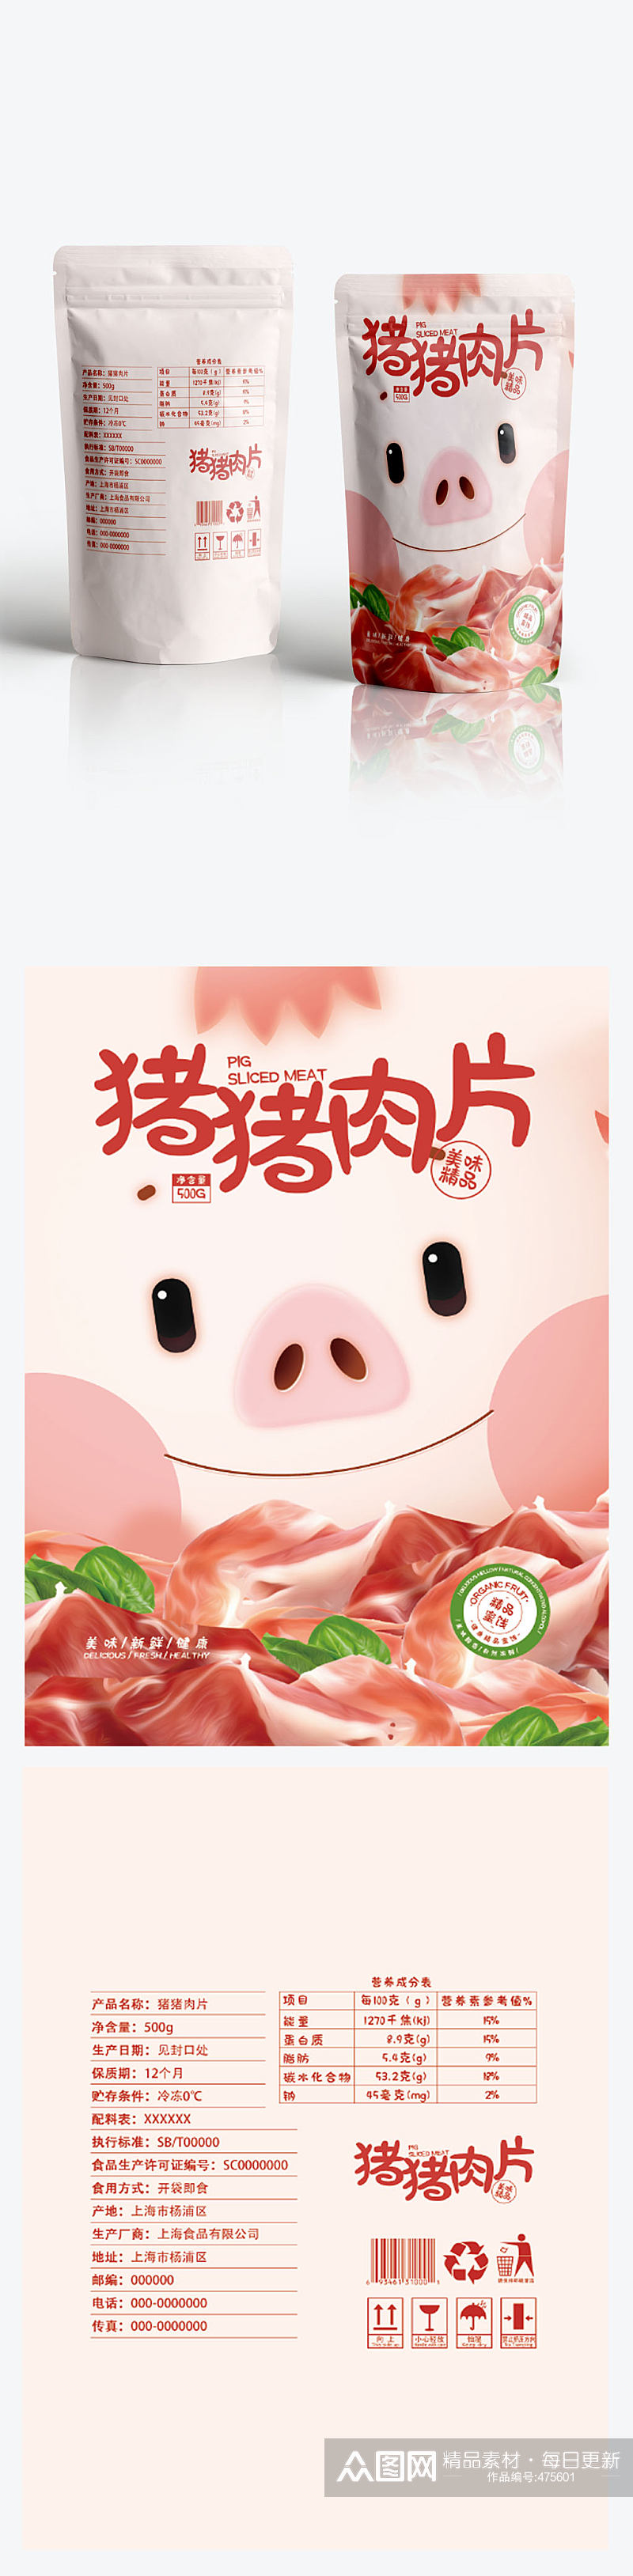 猪猪肉片零食包装设计素材